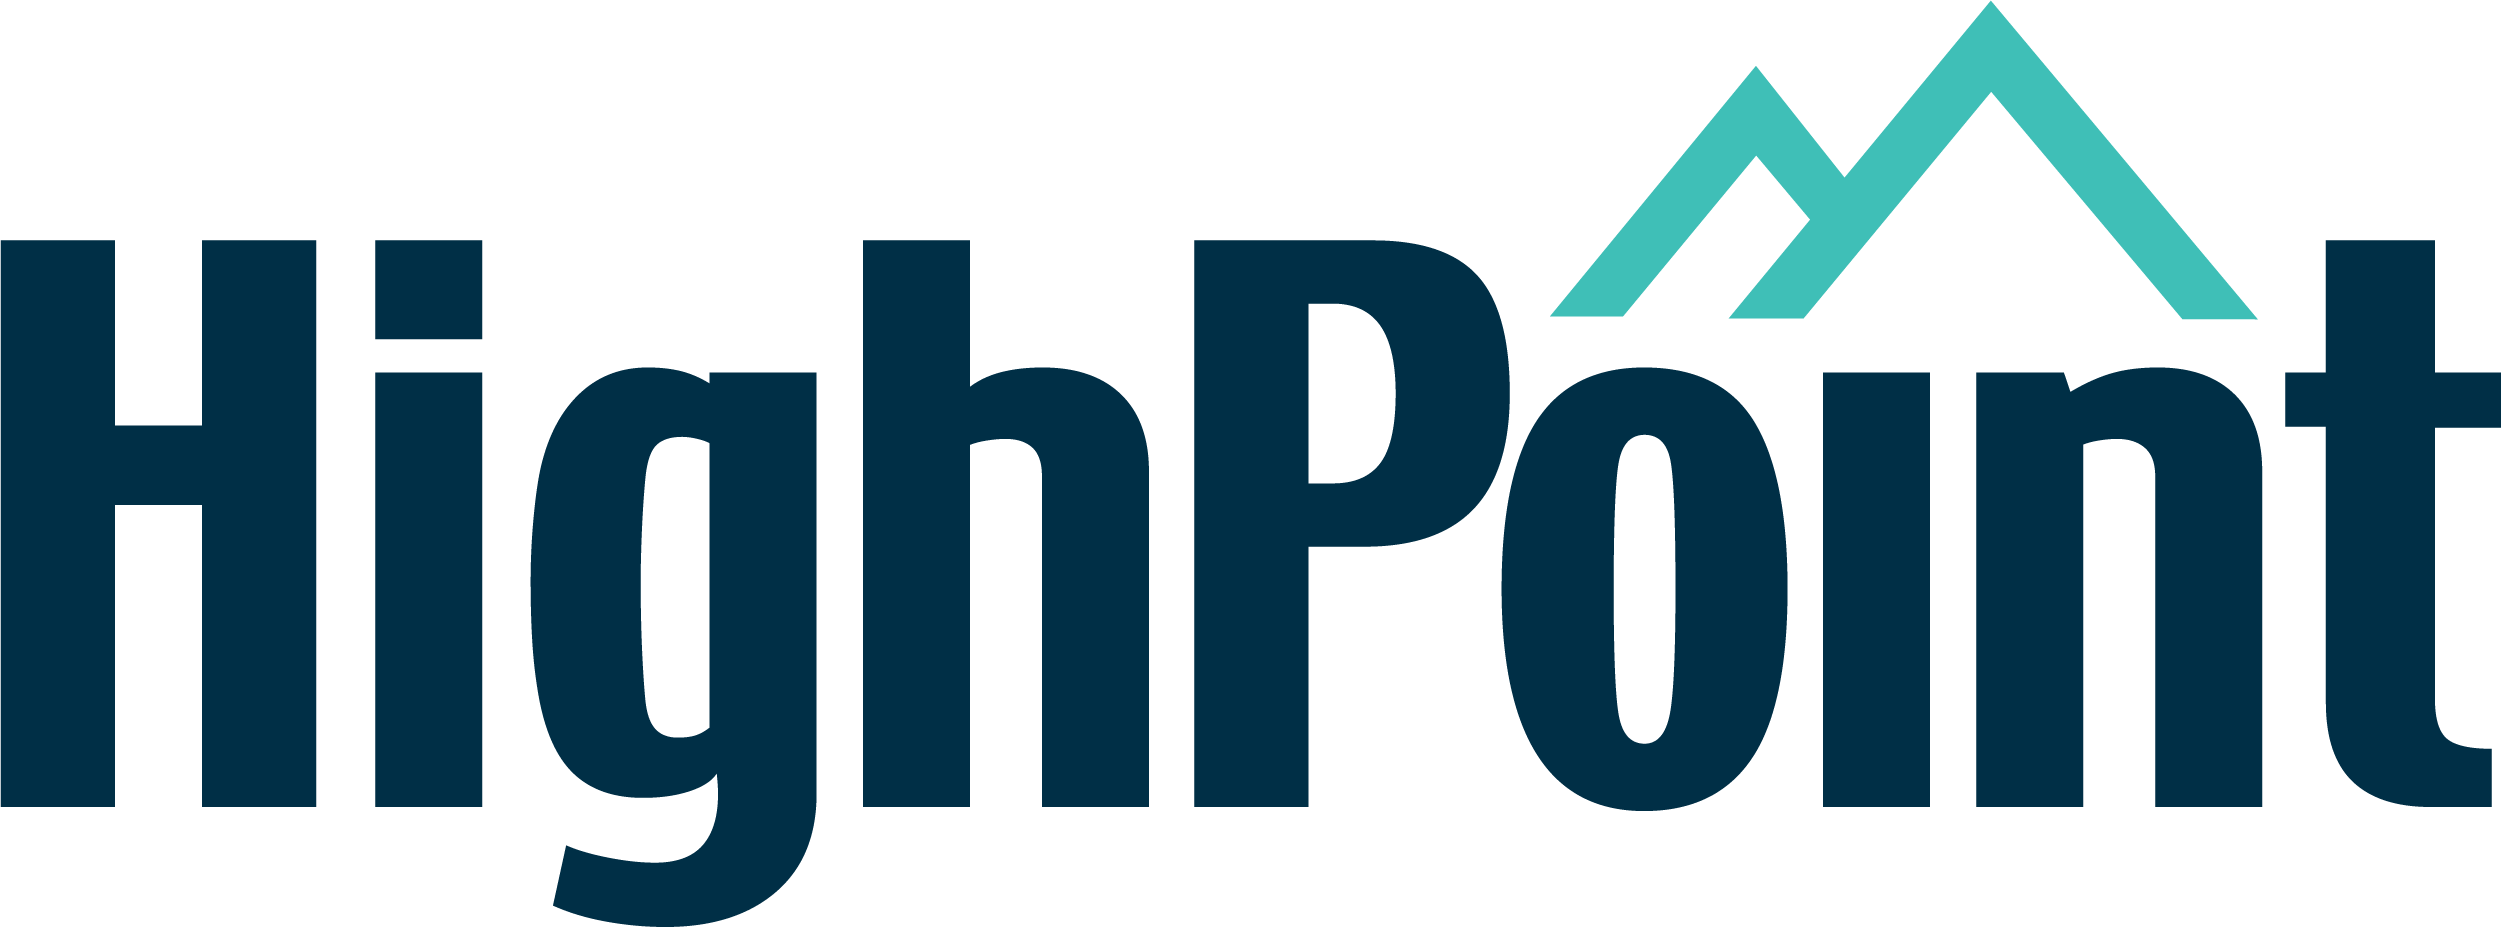 highpoint-logo